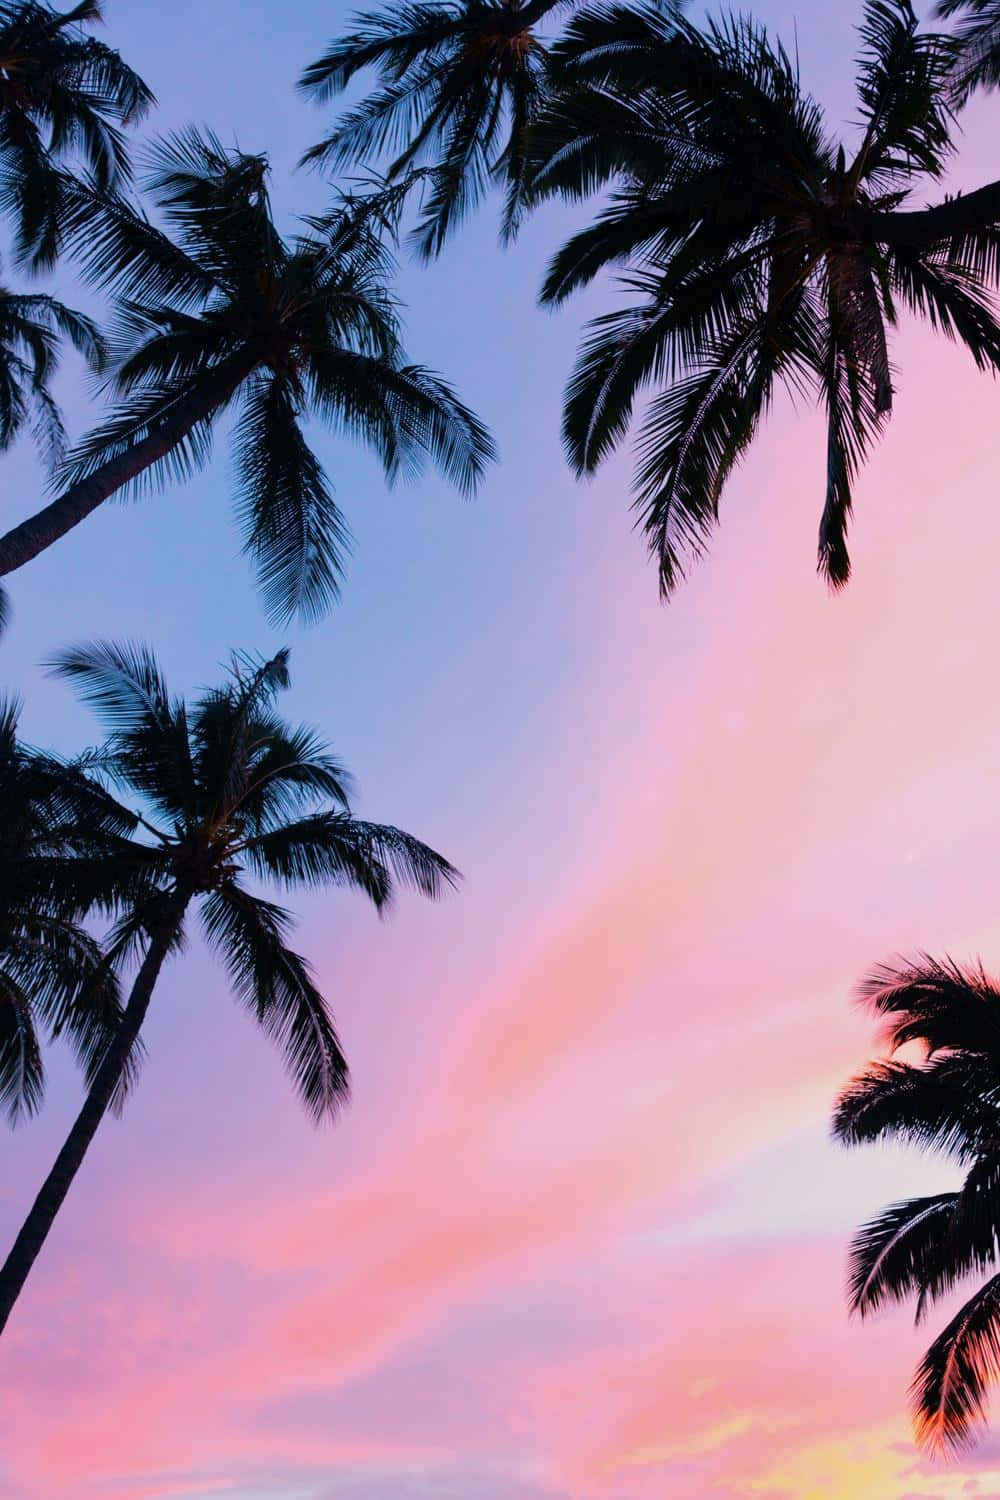 Læn dig tilbage i Paradis med en Palm Tree Iphone Wallpaper